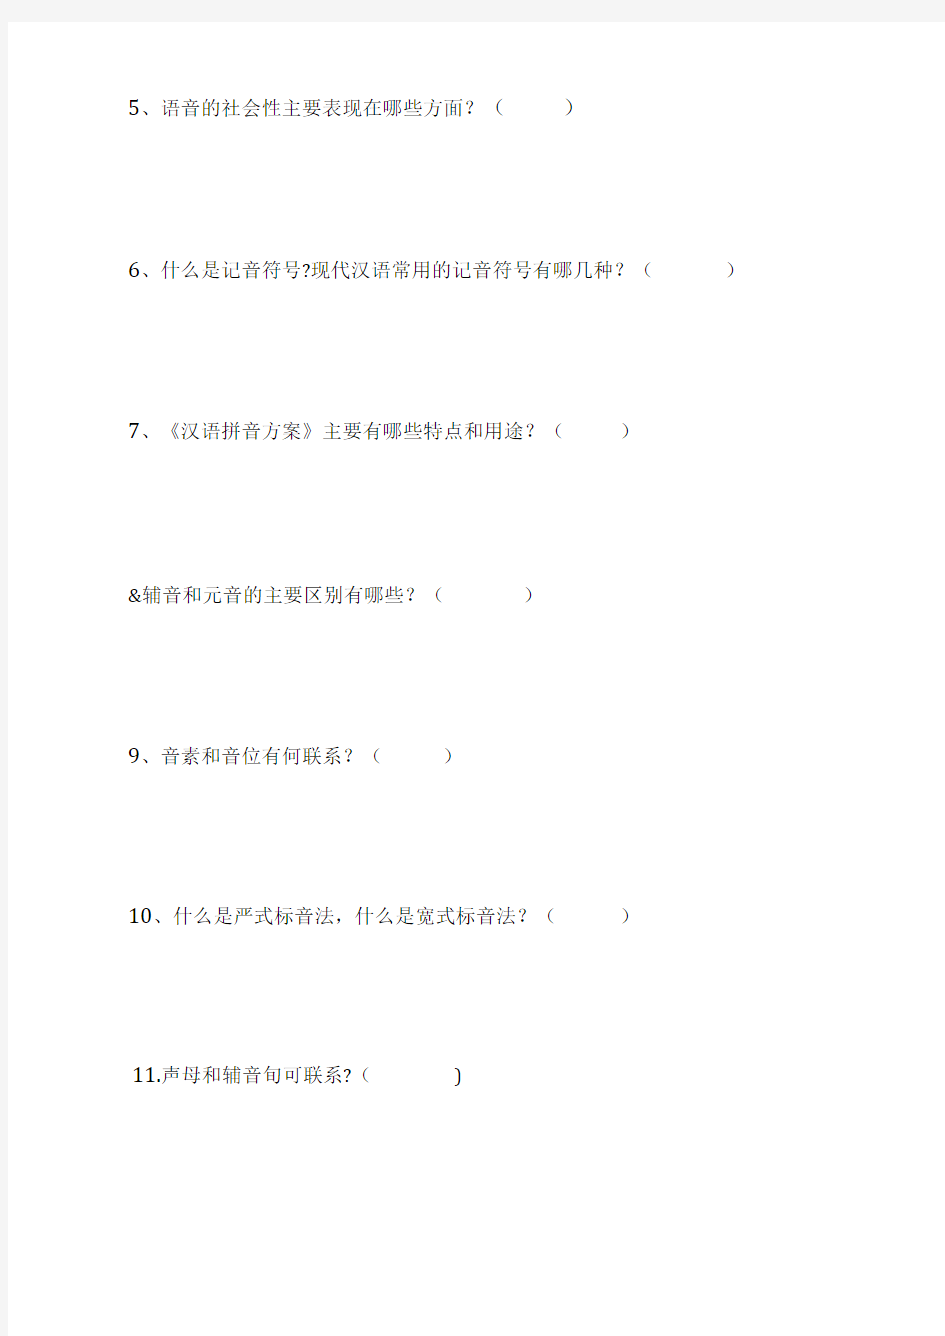 现代汉语现代汉语习题集试题二(第二章语音)考试卷模拟考试题.docx